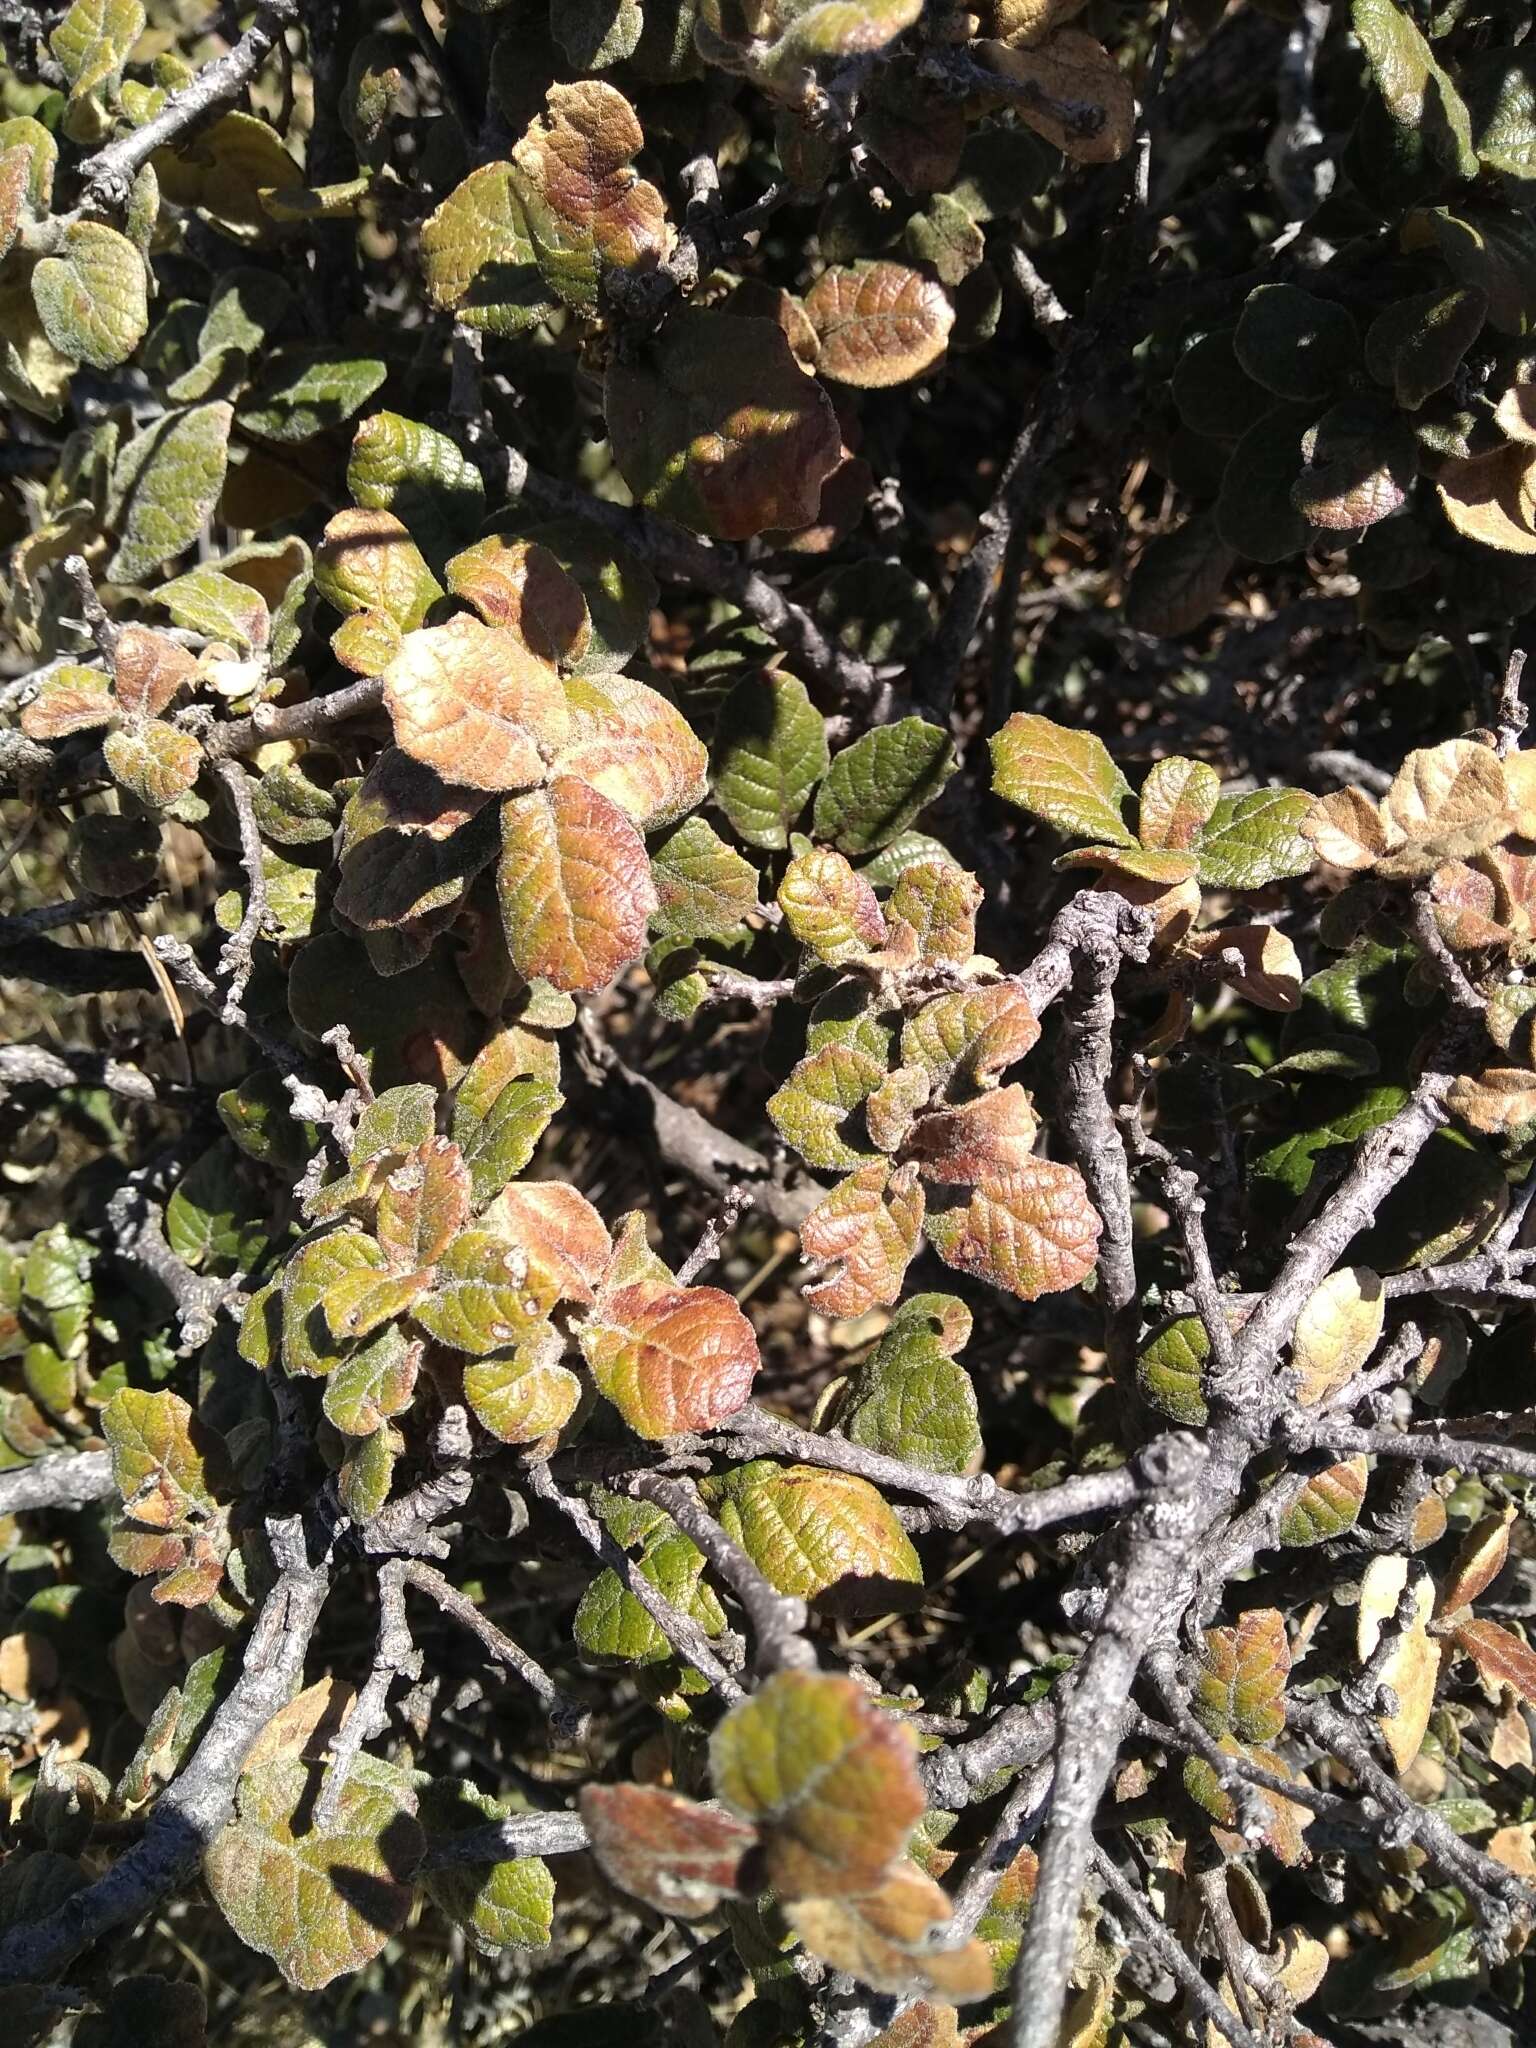 Image of Quercus alpescens Trel.